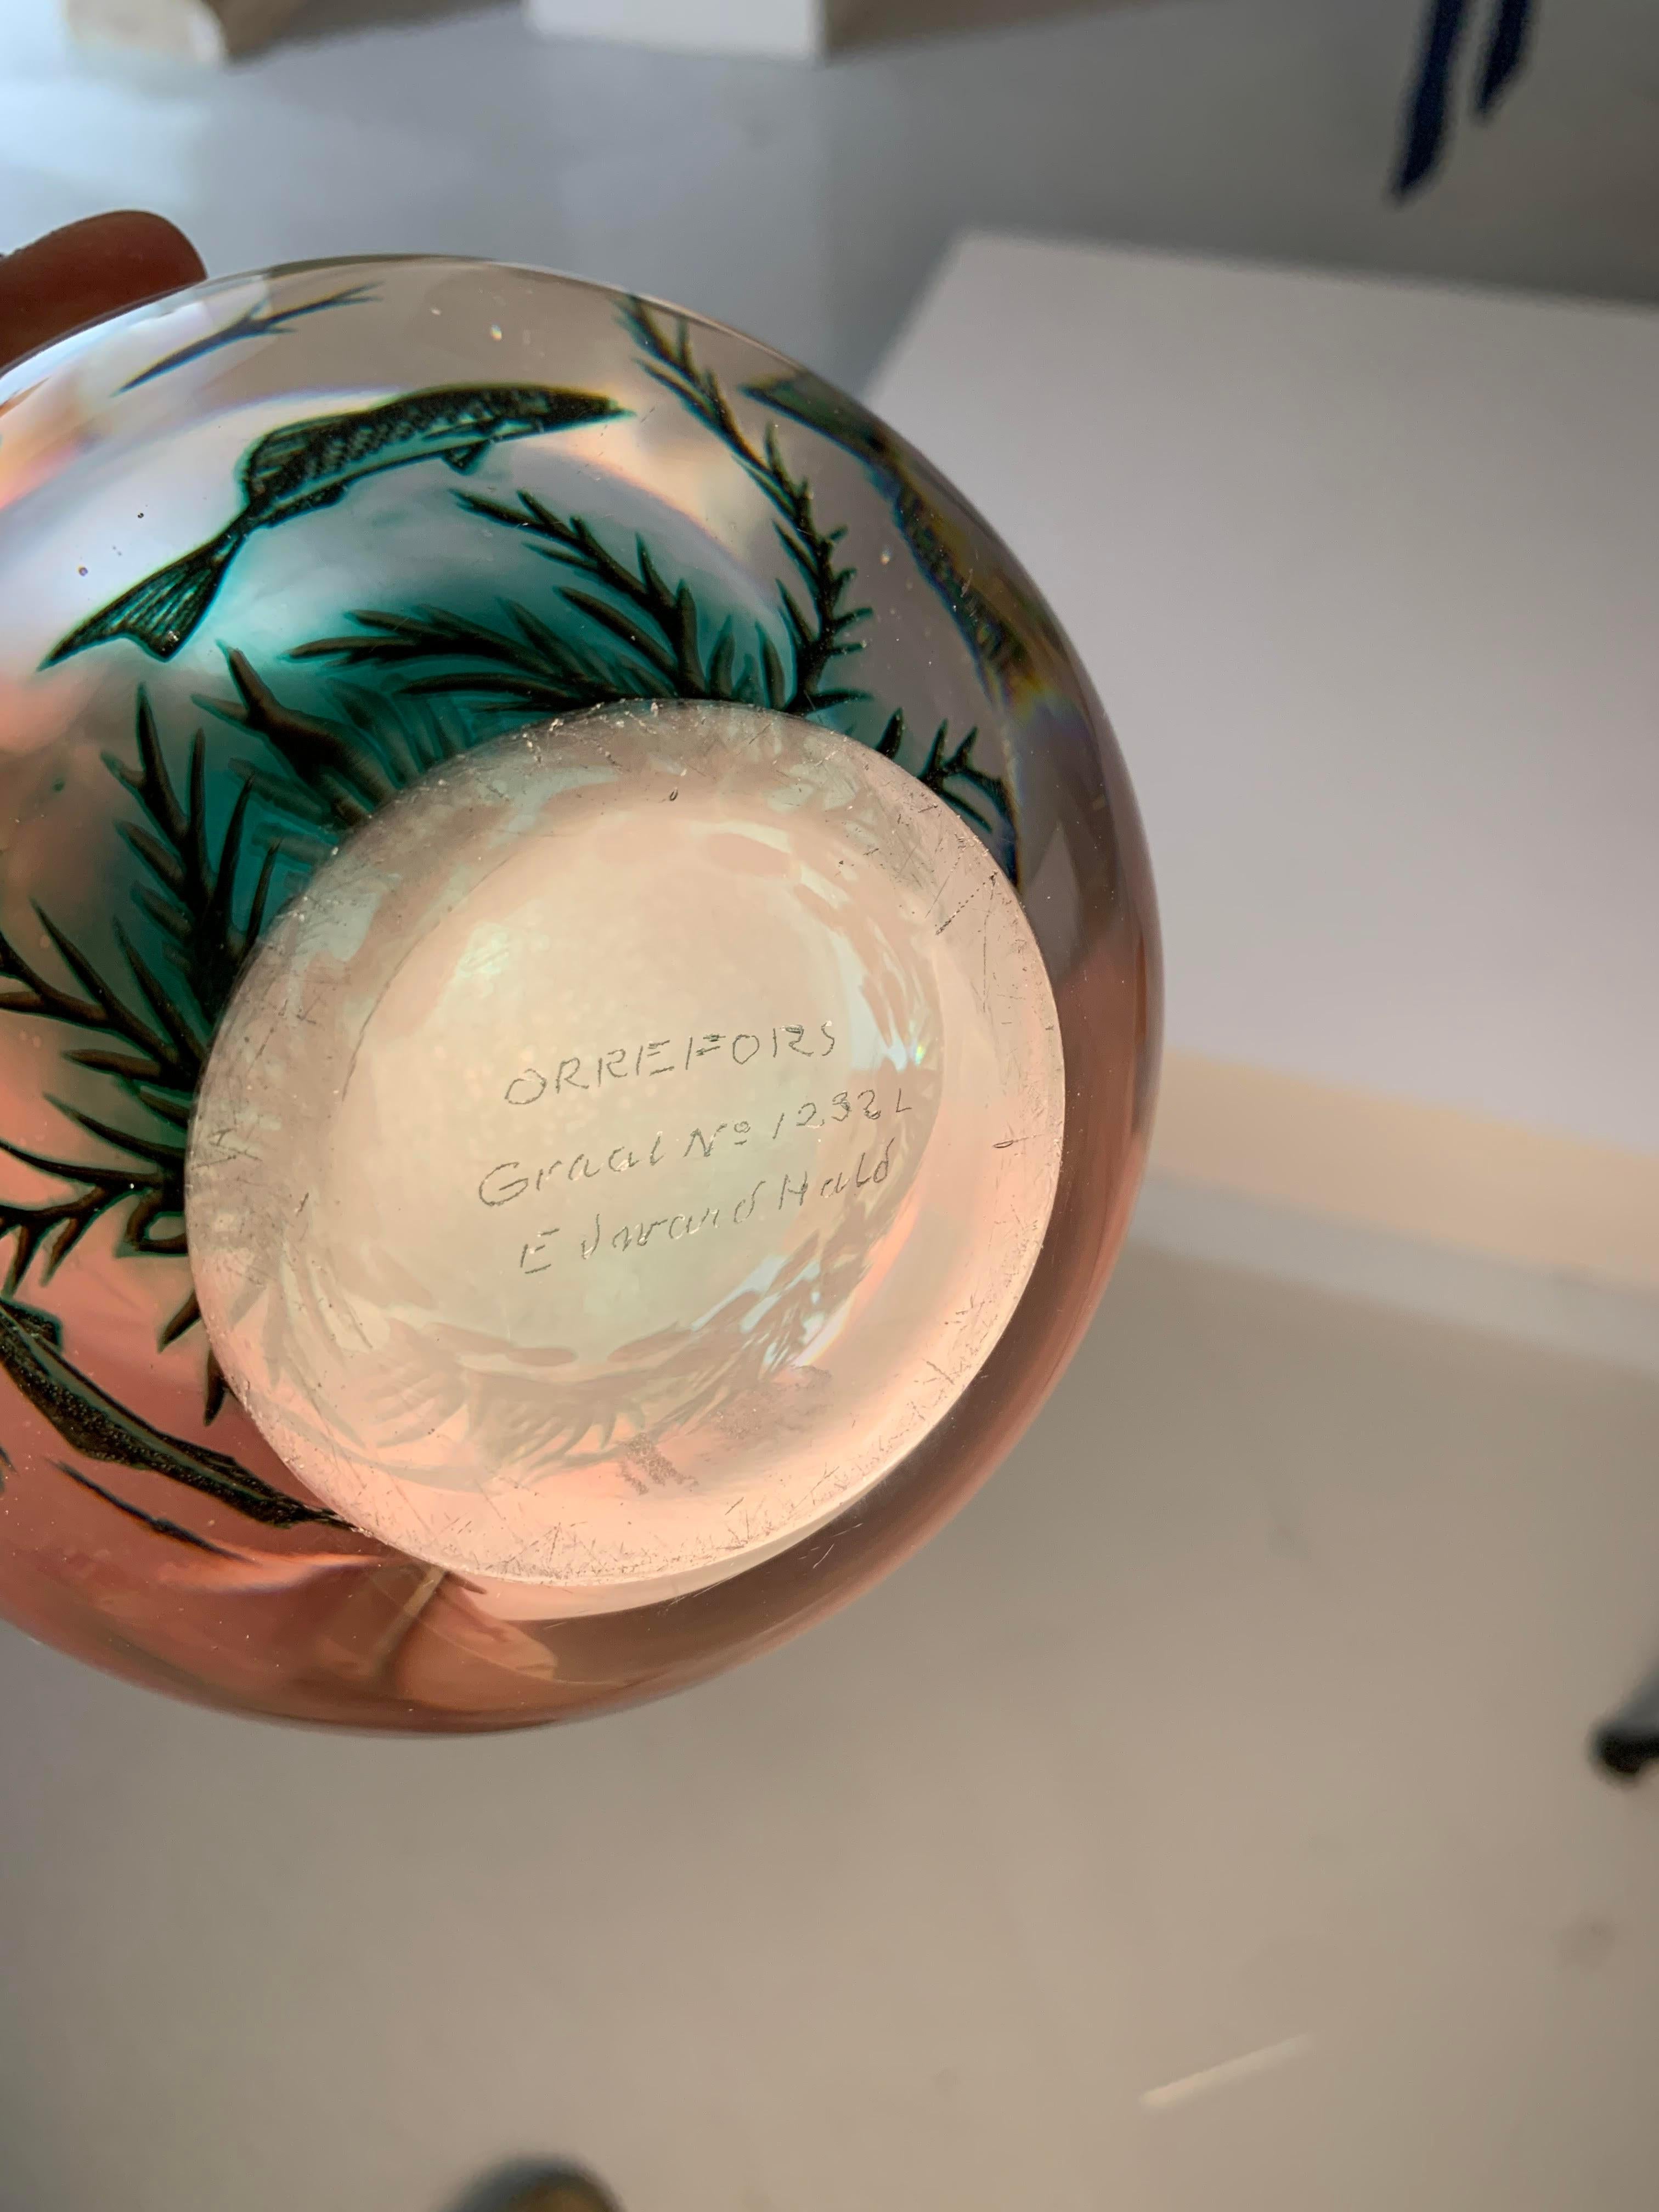 e vase suédois Fiskgraal Aquamarine d'Edward Hald pour Orrefors, datant des années 1950, est une pièce unique d'art et d'artisanat. Sa particularité réside dans l'équilibre délicat entre son design exquis et la technique innovante du graal utilisée